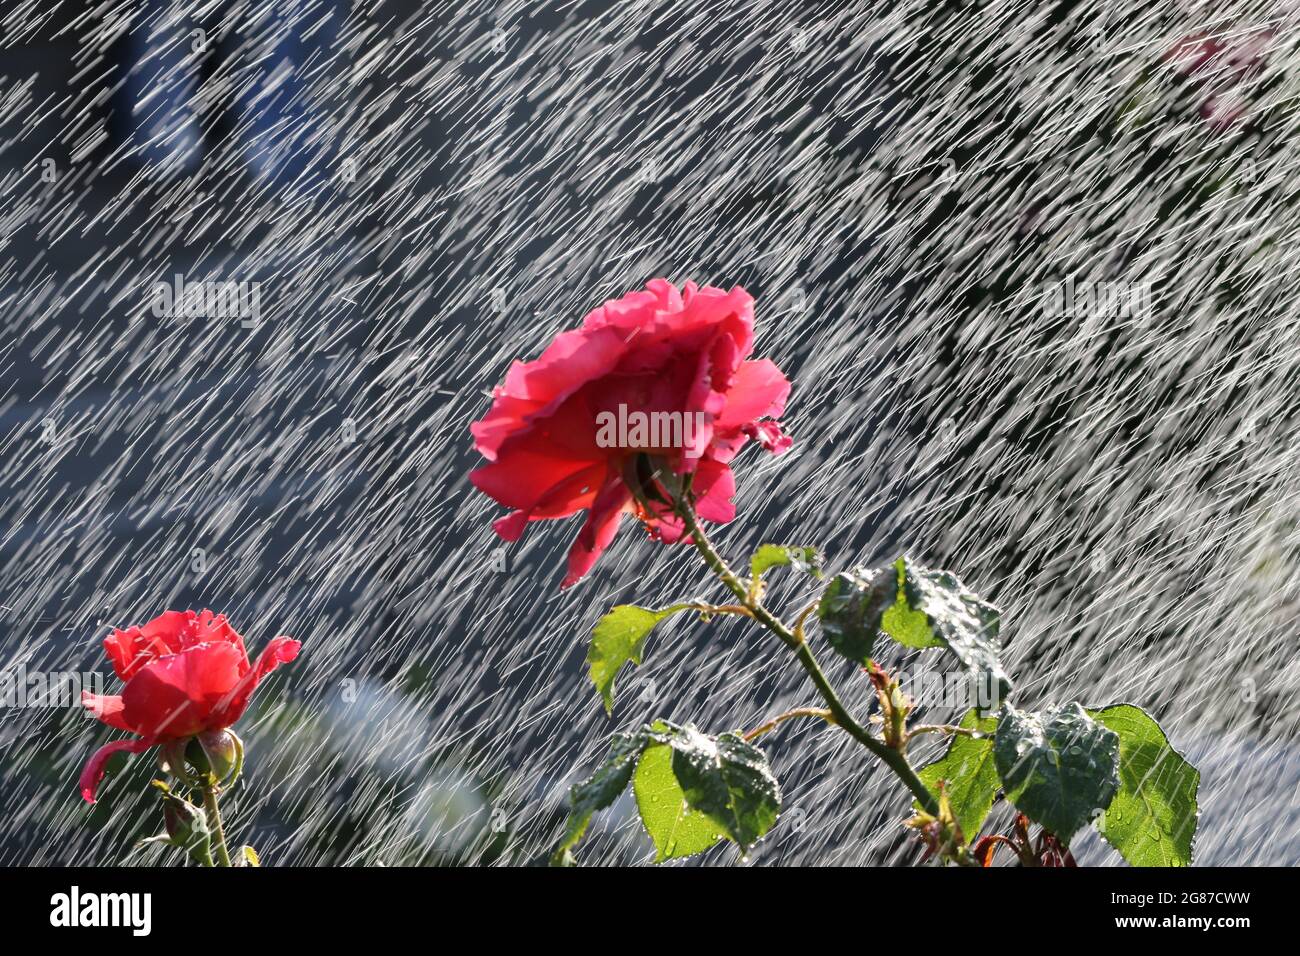 Roses arrosées dans un jardin intérieur, Ayrshire, Écosse, Royaume-Uni.Les gouttelettes d'eau qui atterrissent sur les roses rouges imitent la pluie et le mouvement Banque D'Images